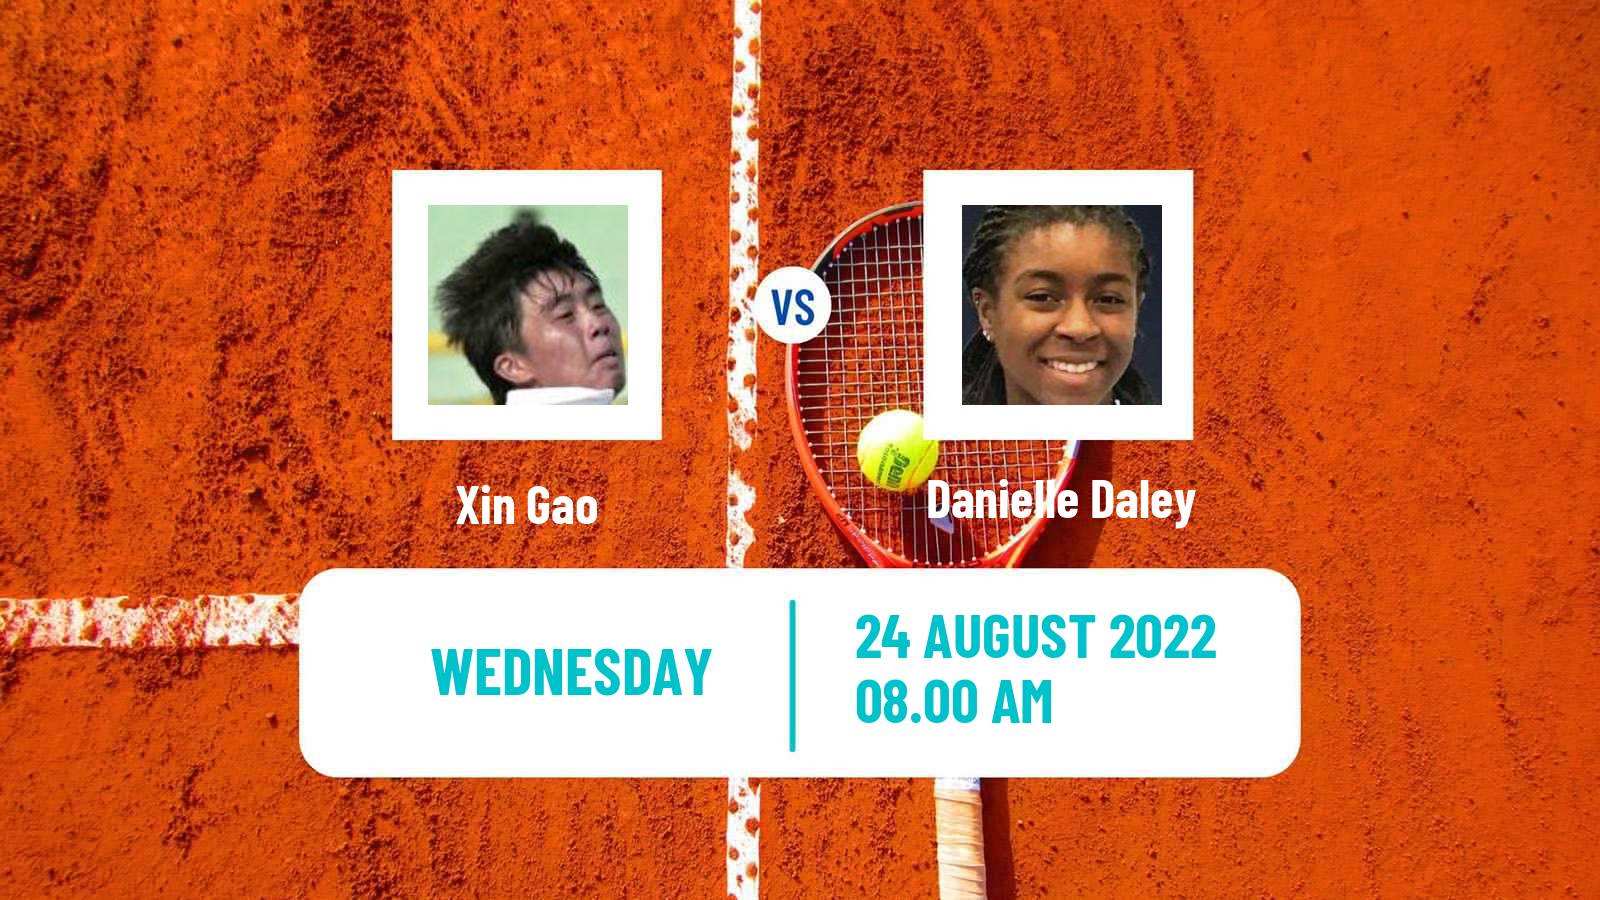 Tennis ITF Tournaments Xin Gao - Danielle Daley